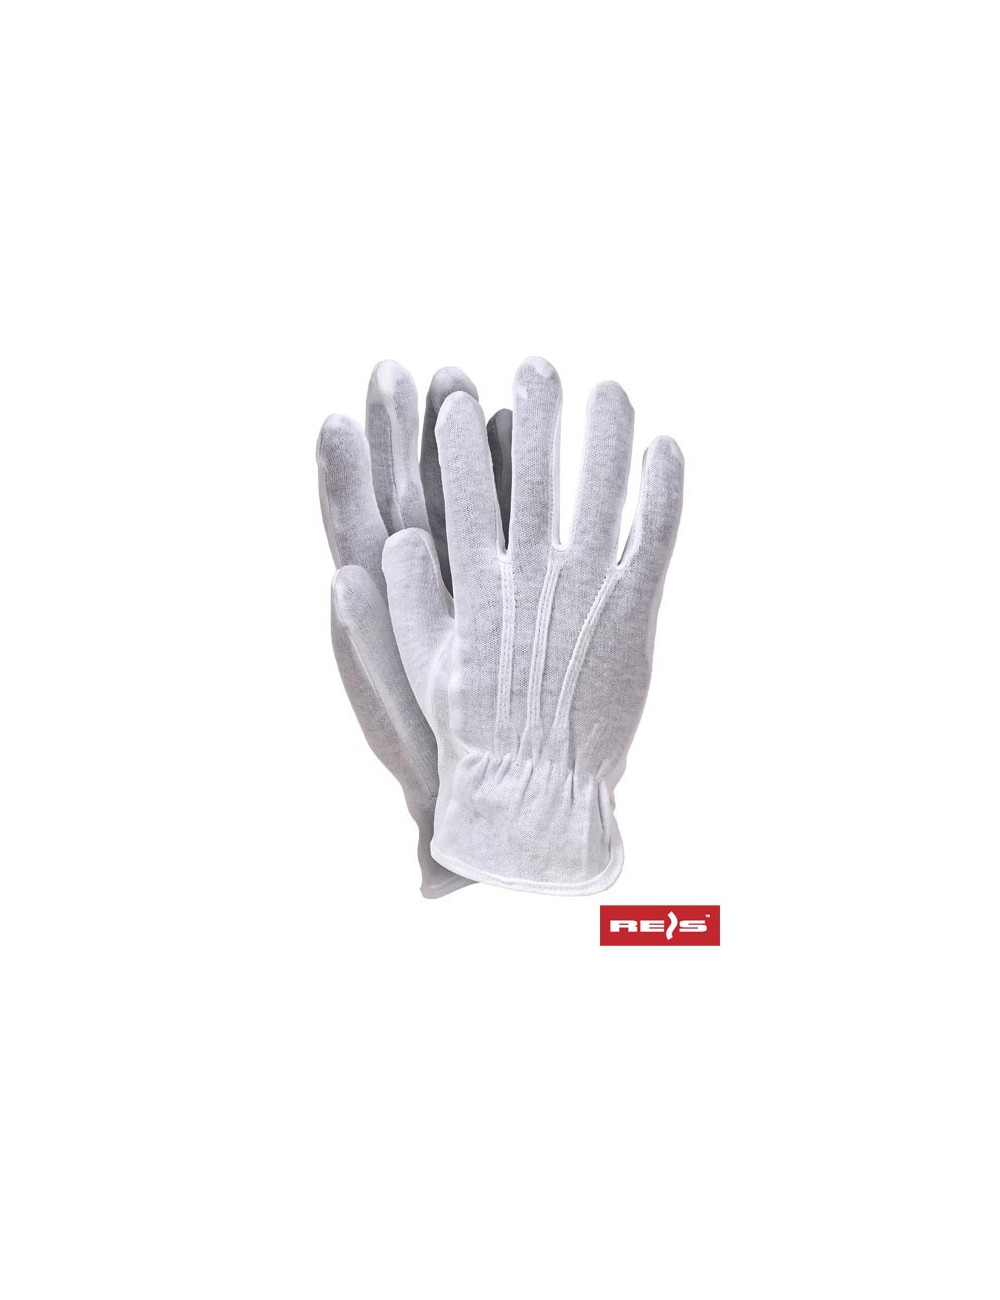 Protective gloves rwkblux w white Reis